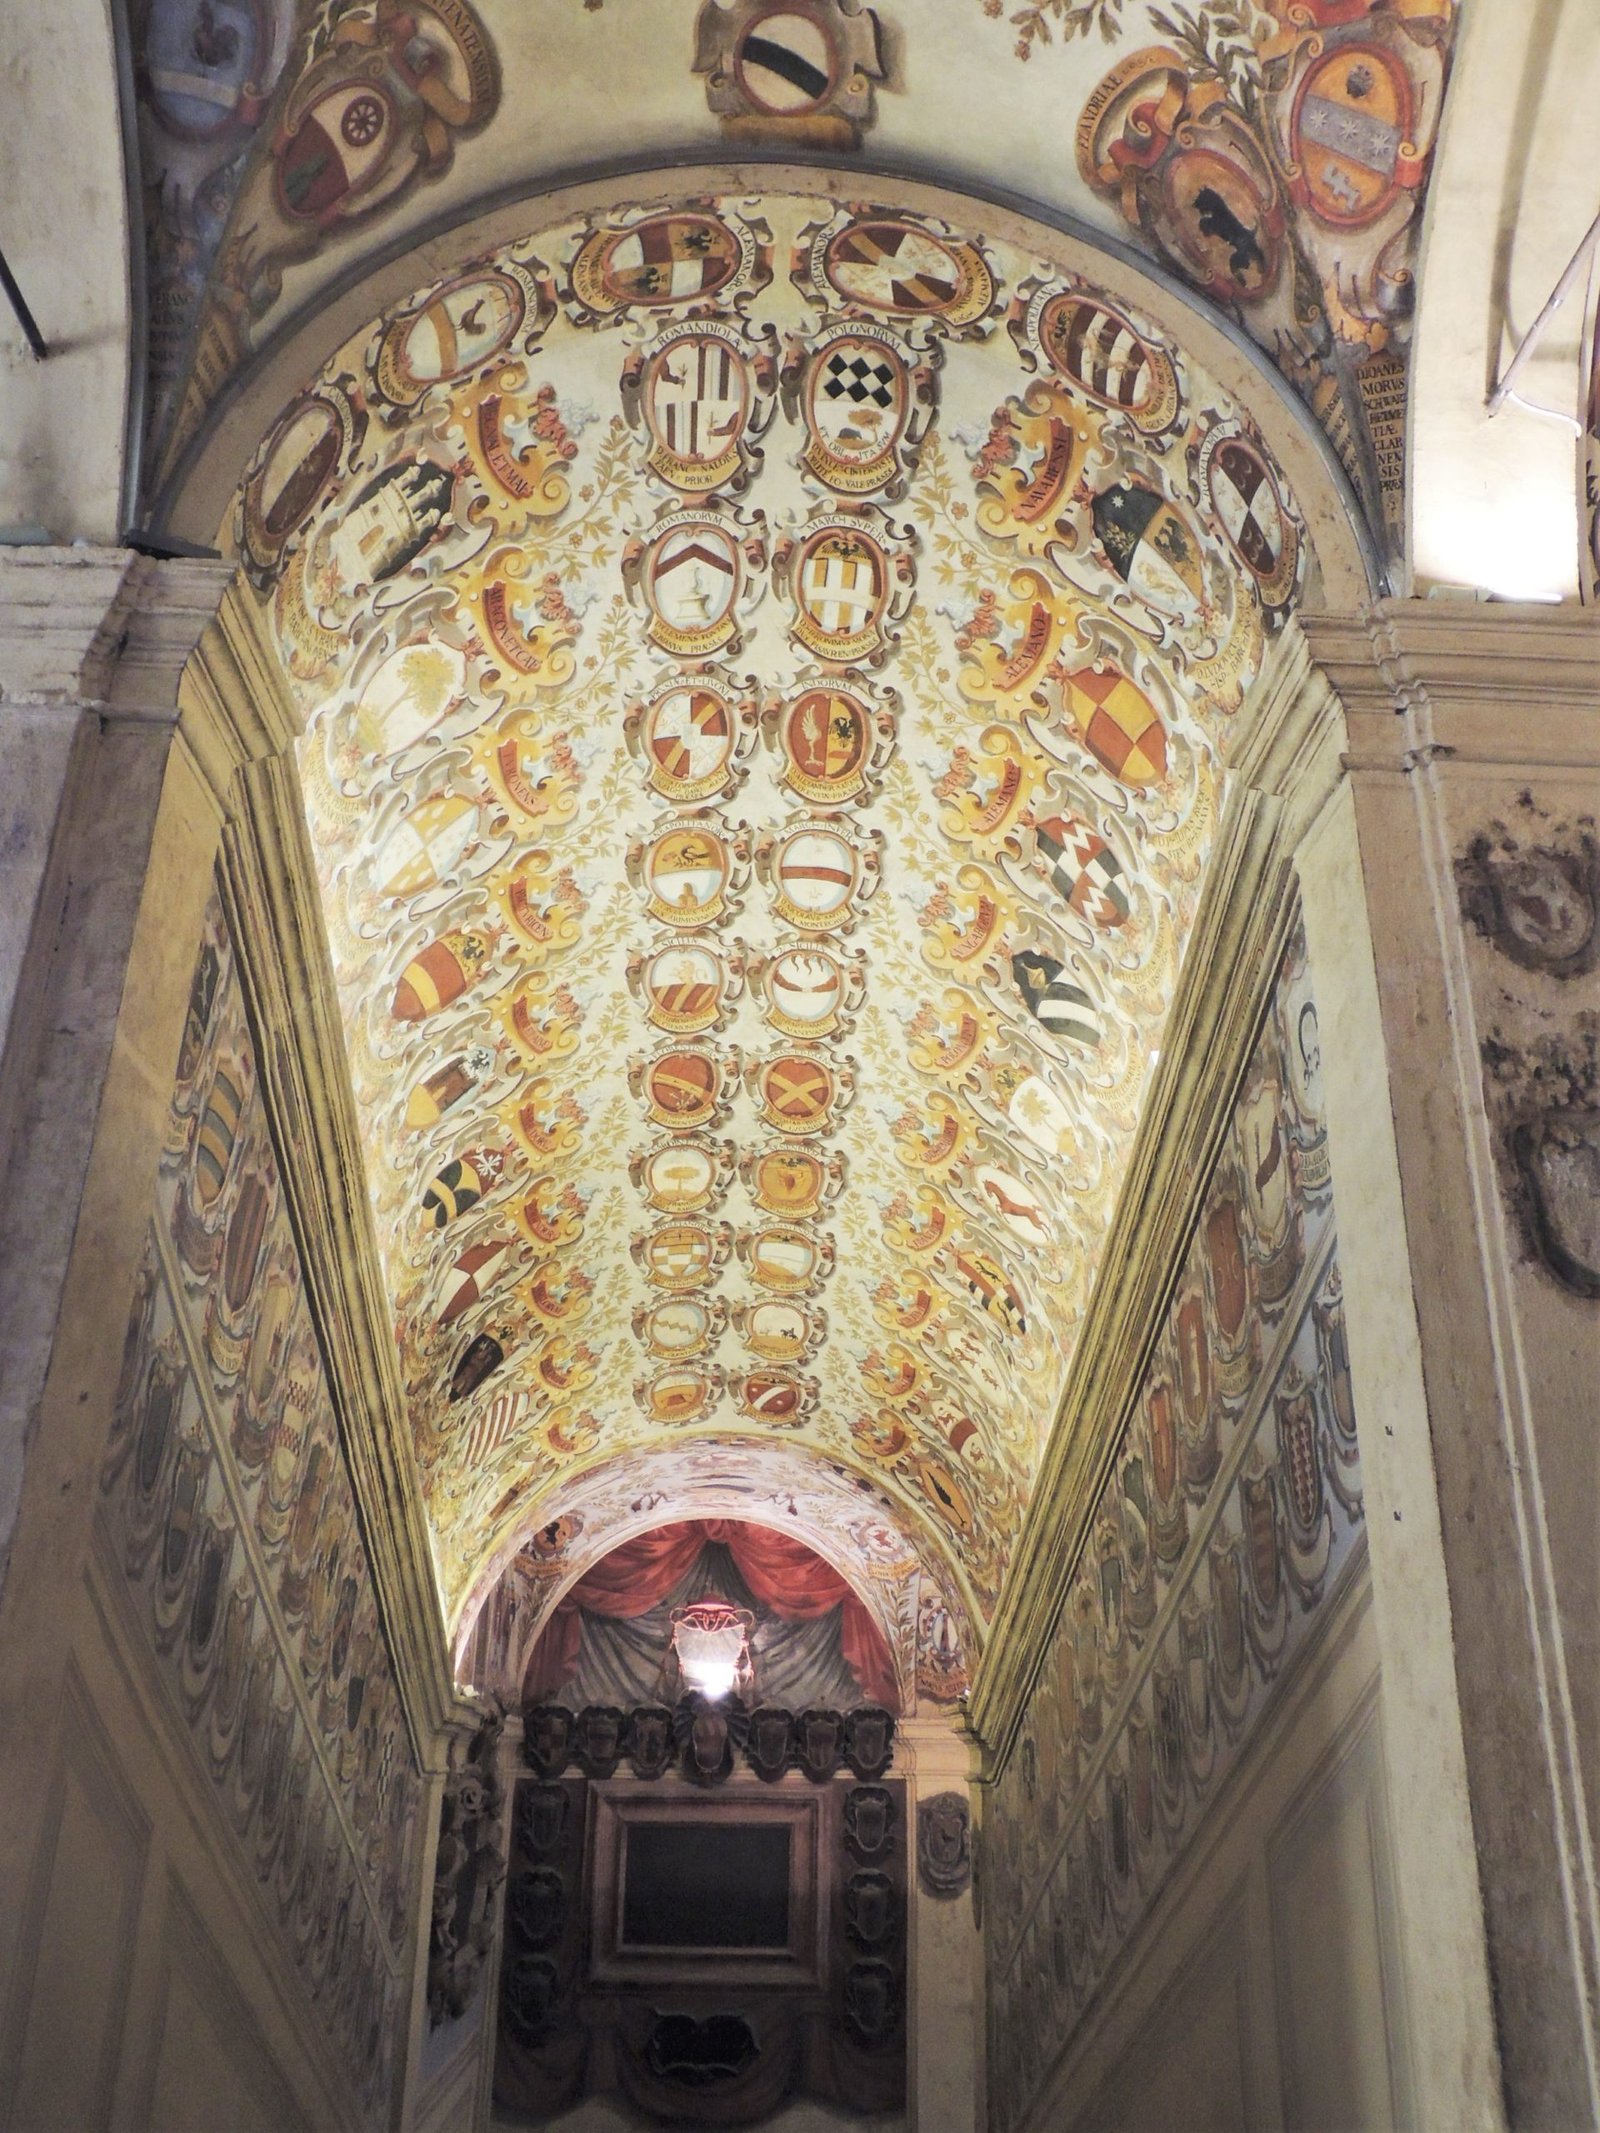 Archiginnasio Palace ceiling, Bologna, Italy